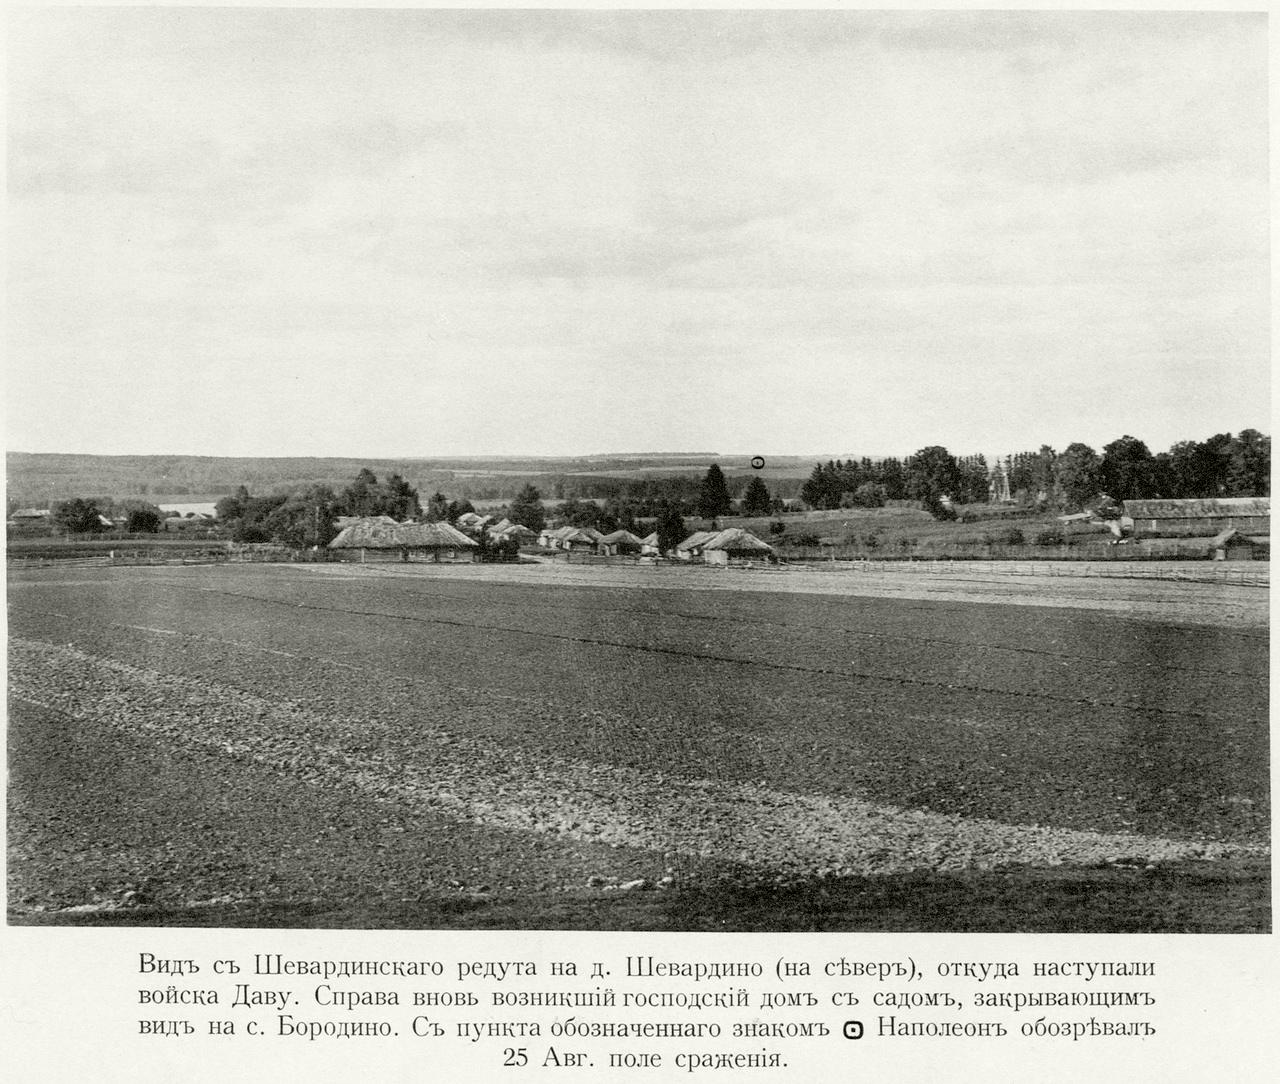 Бородинское поле. 1912 год